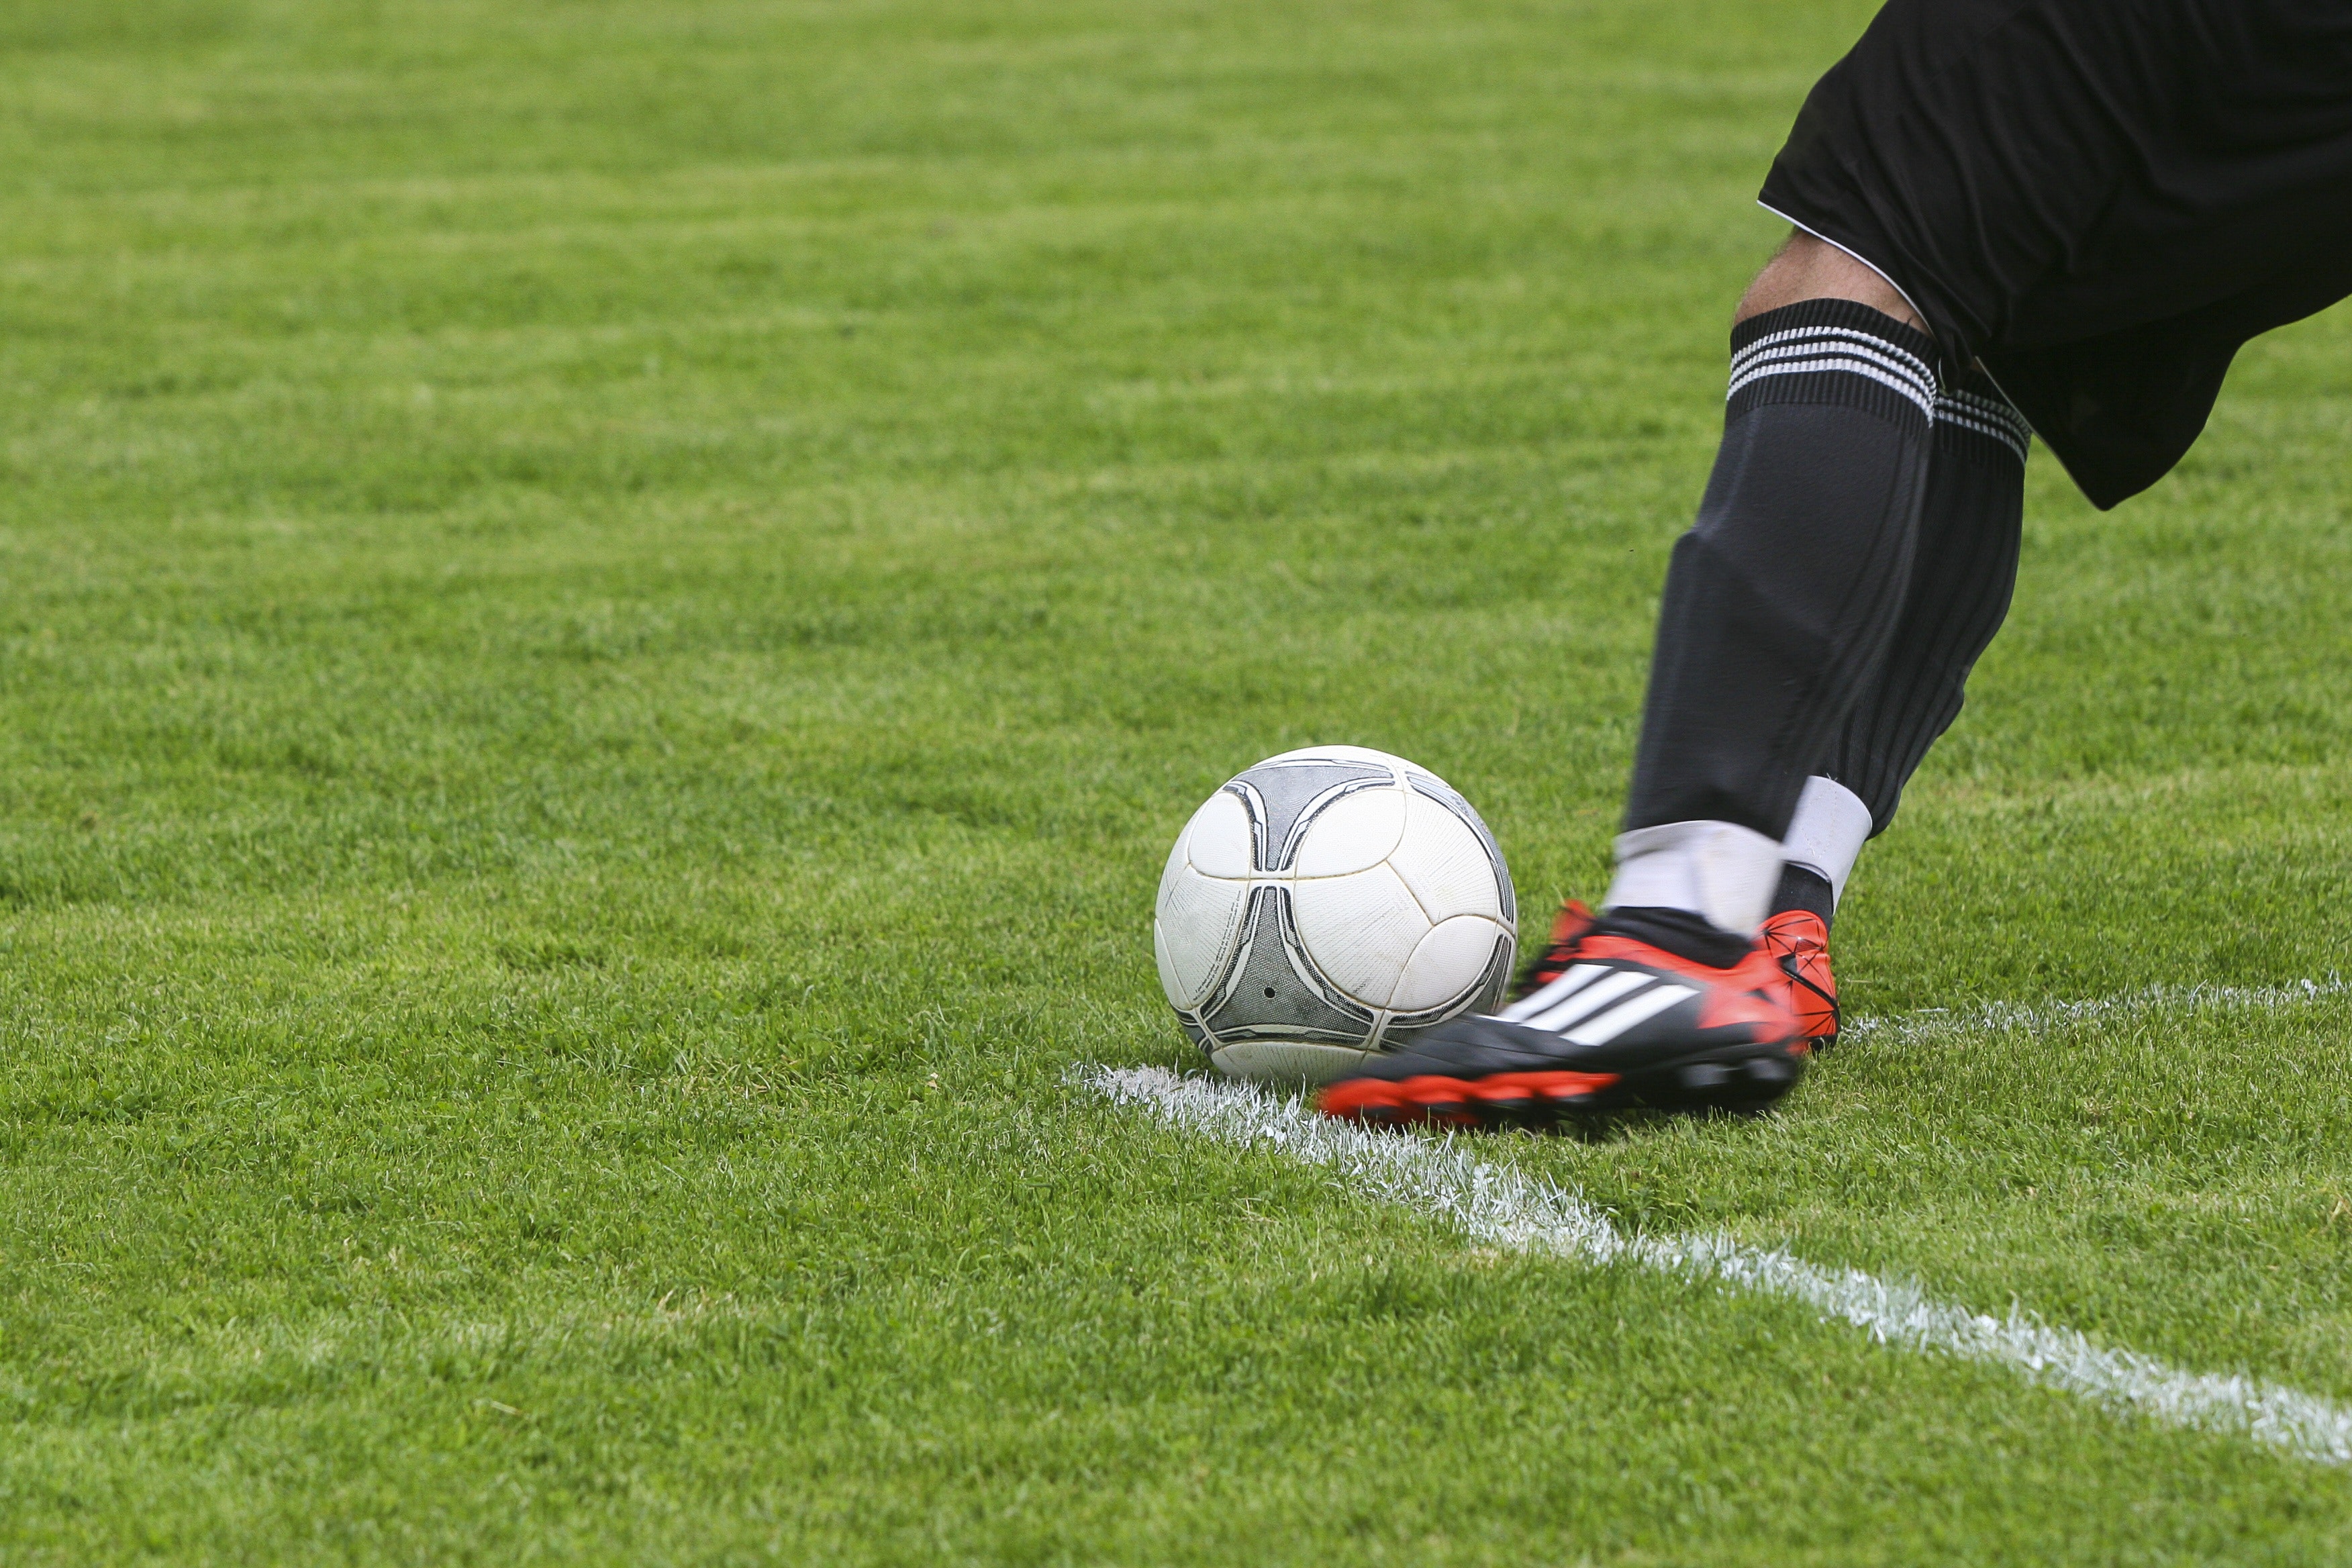 Botrány a nógrádi focimeccsen: egy szurkoló fejelte le a játékost, akinek  eltört az orra - Blikk